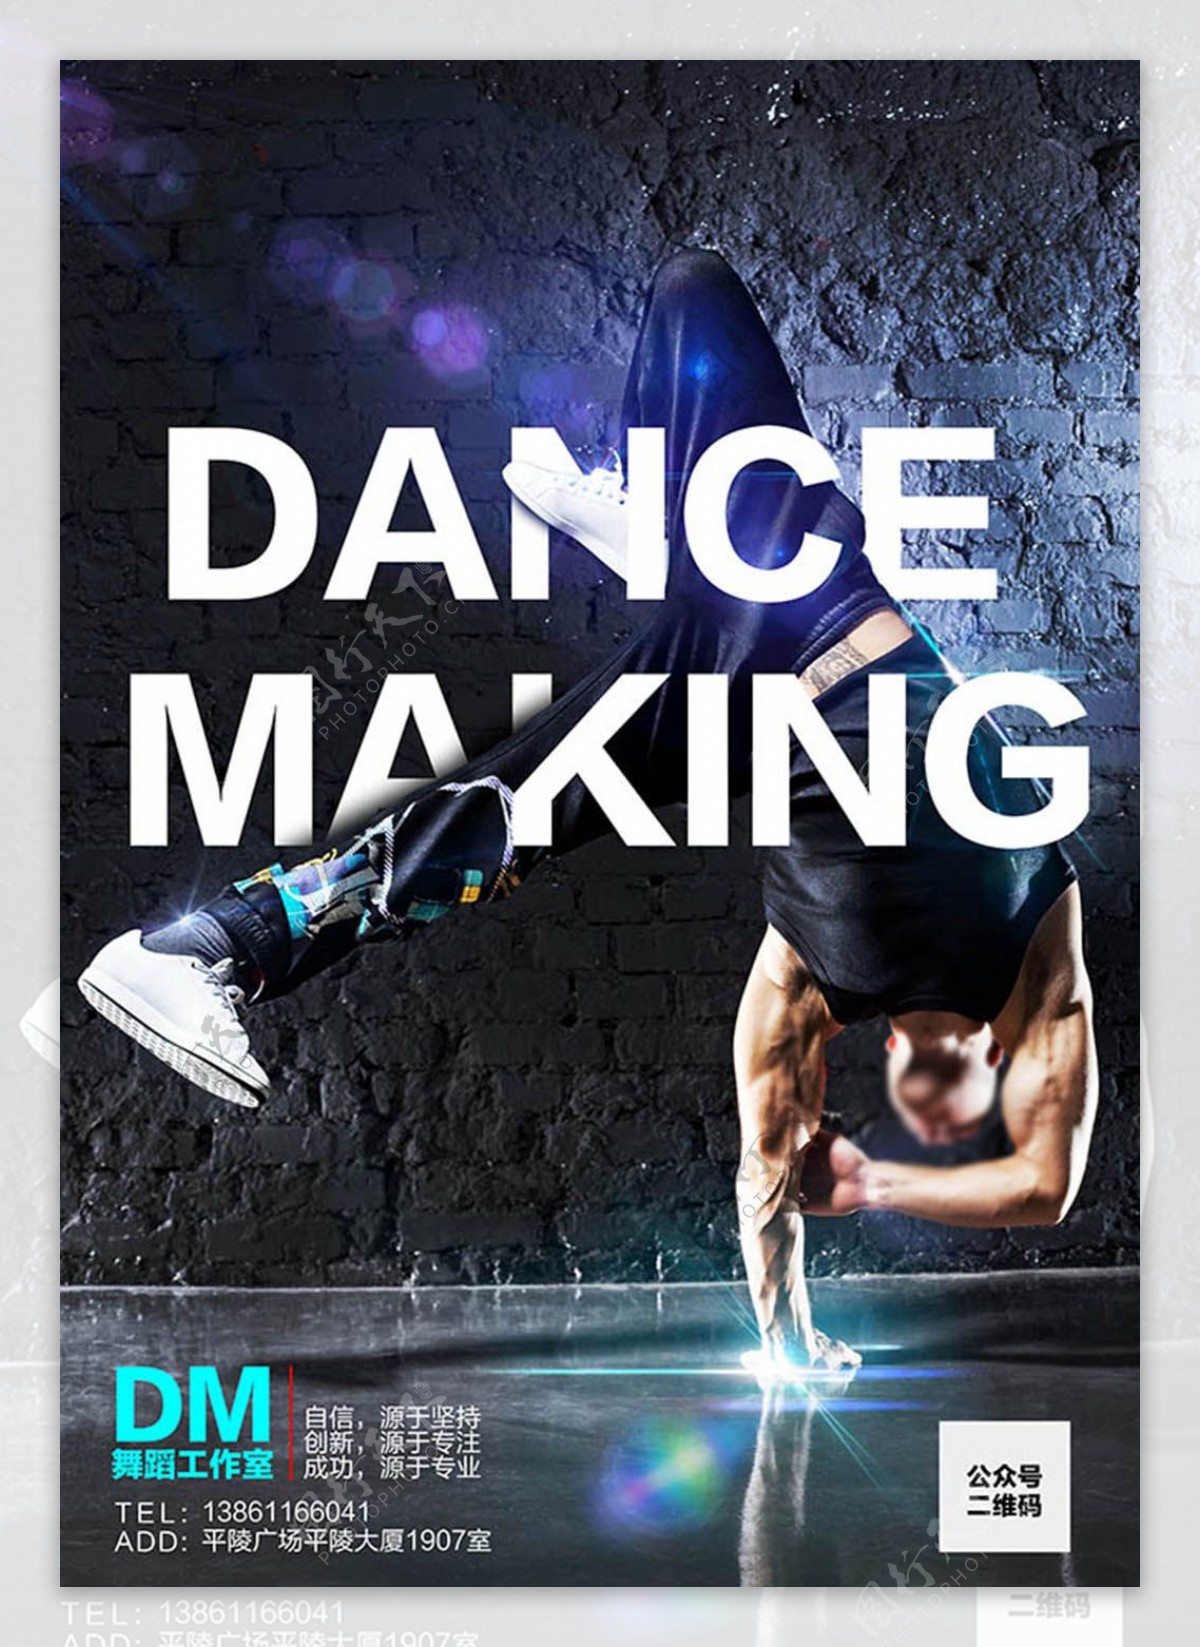 舞蹈工作室海报设计psd素材下载